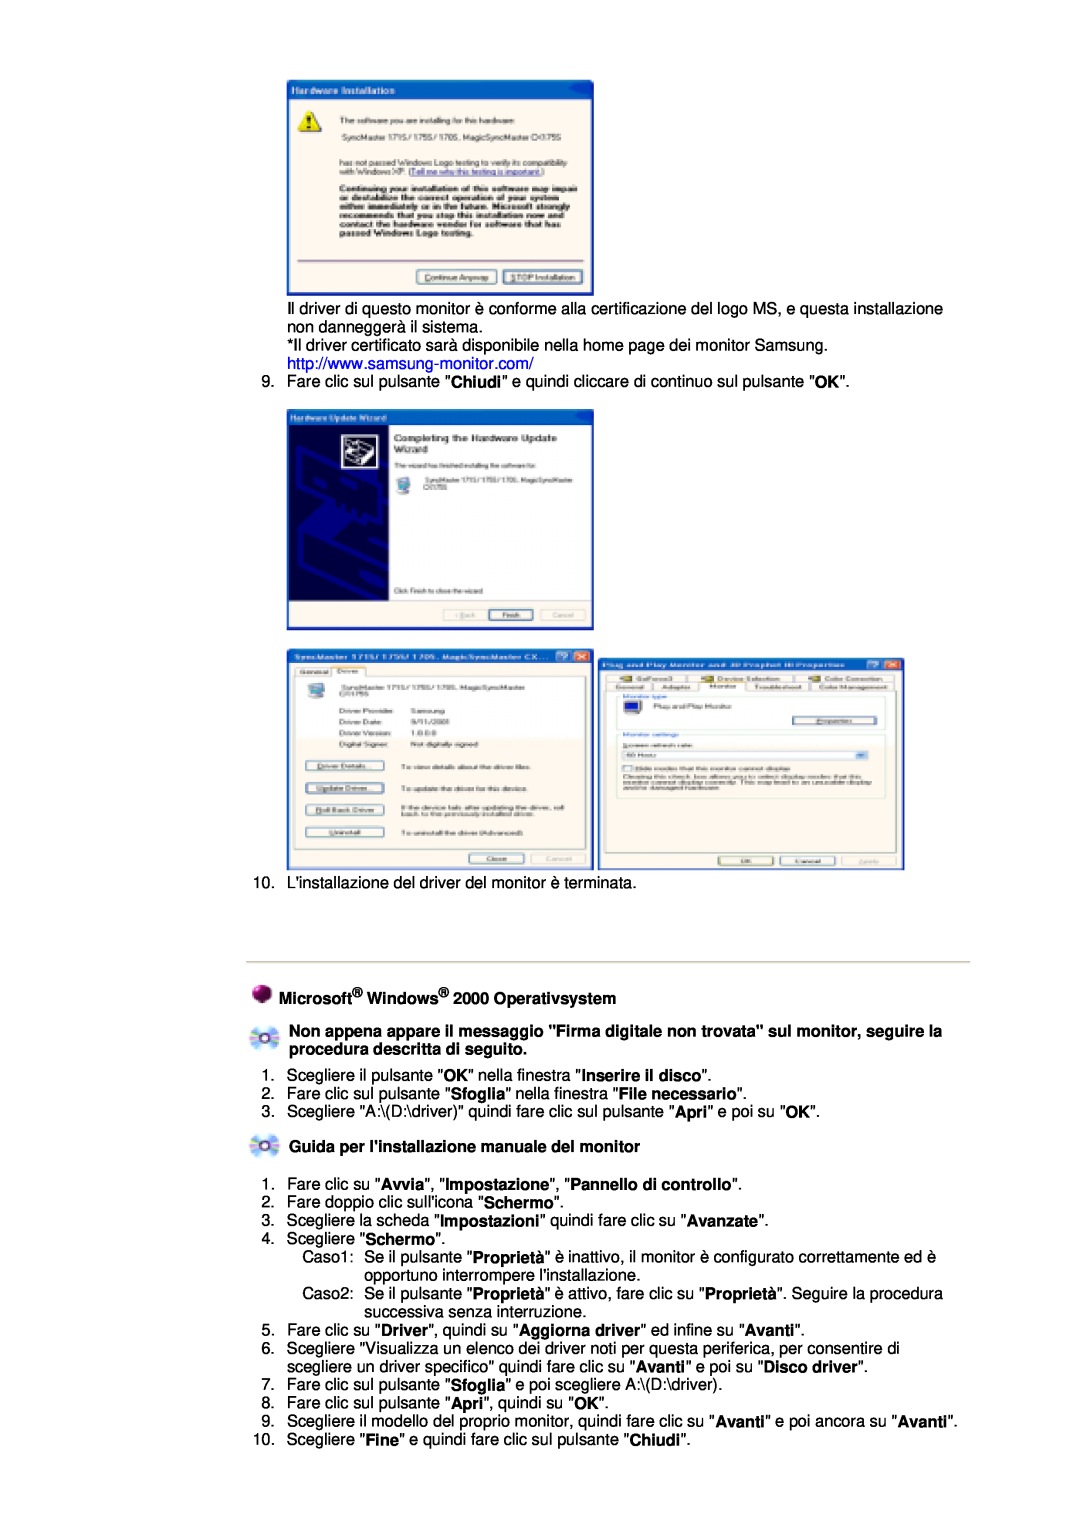 Samsung GY15CSSS/EDC, GY17MSHS/EDC Microsoft Windows 2000 Operativsystem, Guida per linstallazione manuale del monitor 